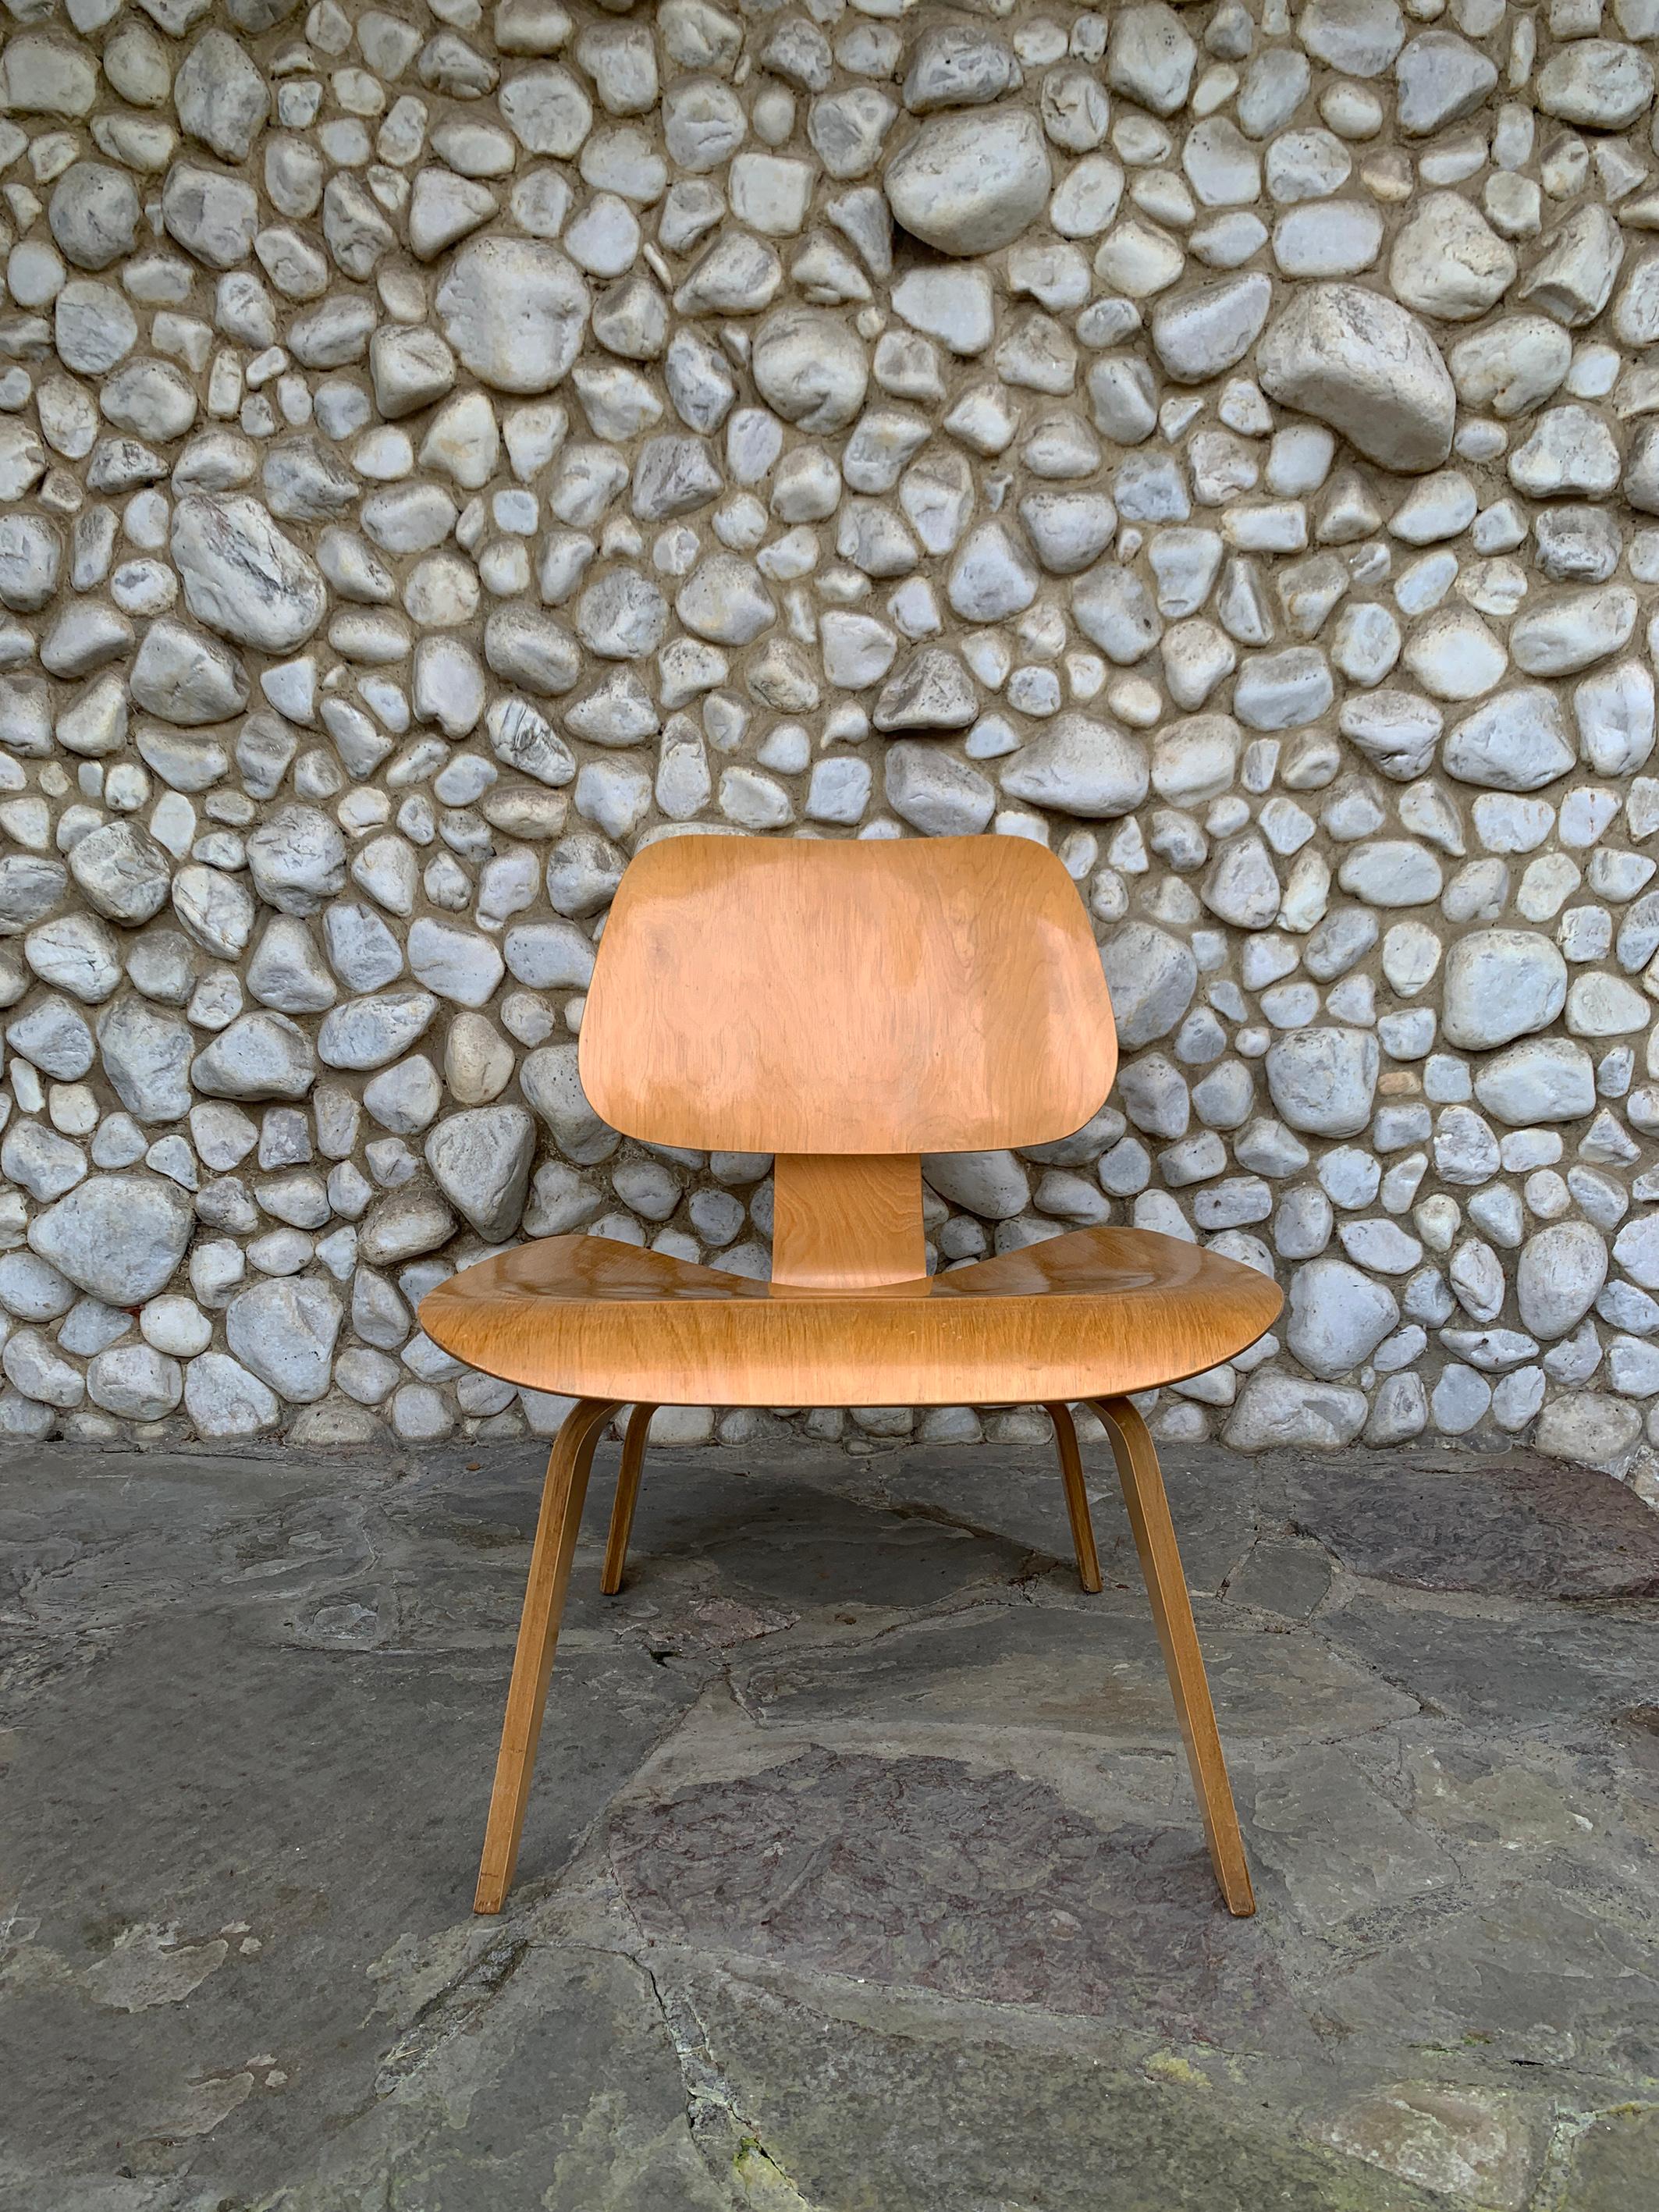 Un des premiers LCW (Lounge Chair Wood) en bouleau.

Produit par Herman Miller entre 1952 et 1958 (la production du LCW a été arrêtée en 1958 jusqu'à sa réintroduction en 1994).   

Etat et finition d'origine. Il est de plus en plus difficile de